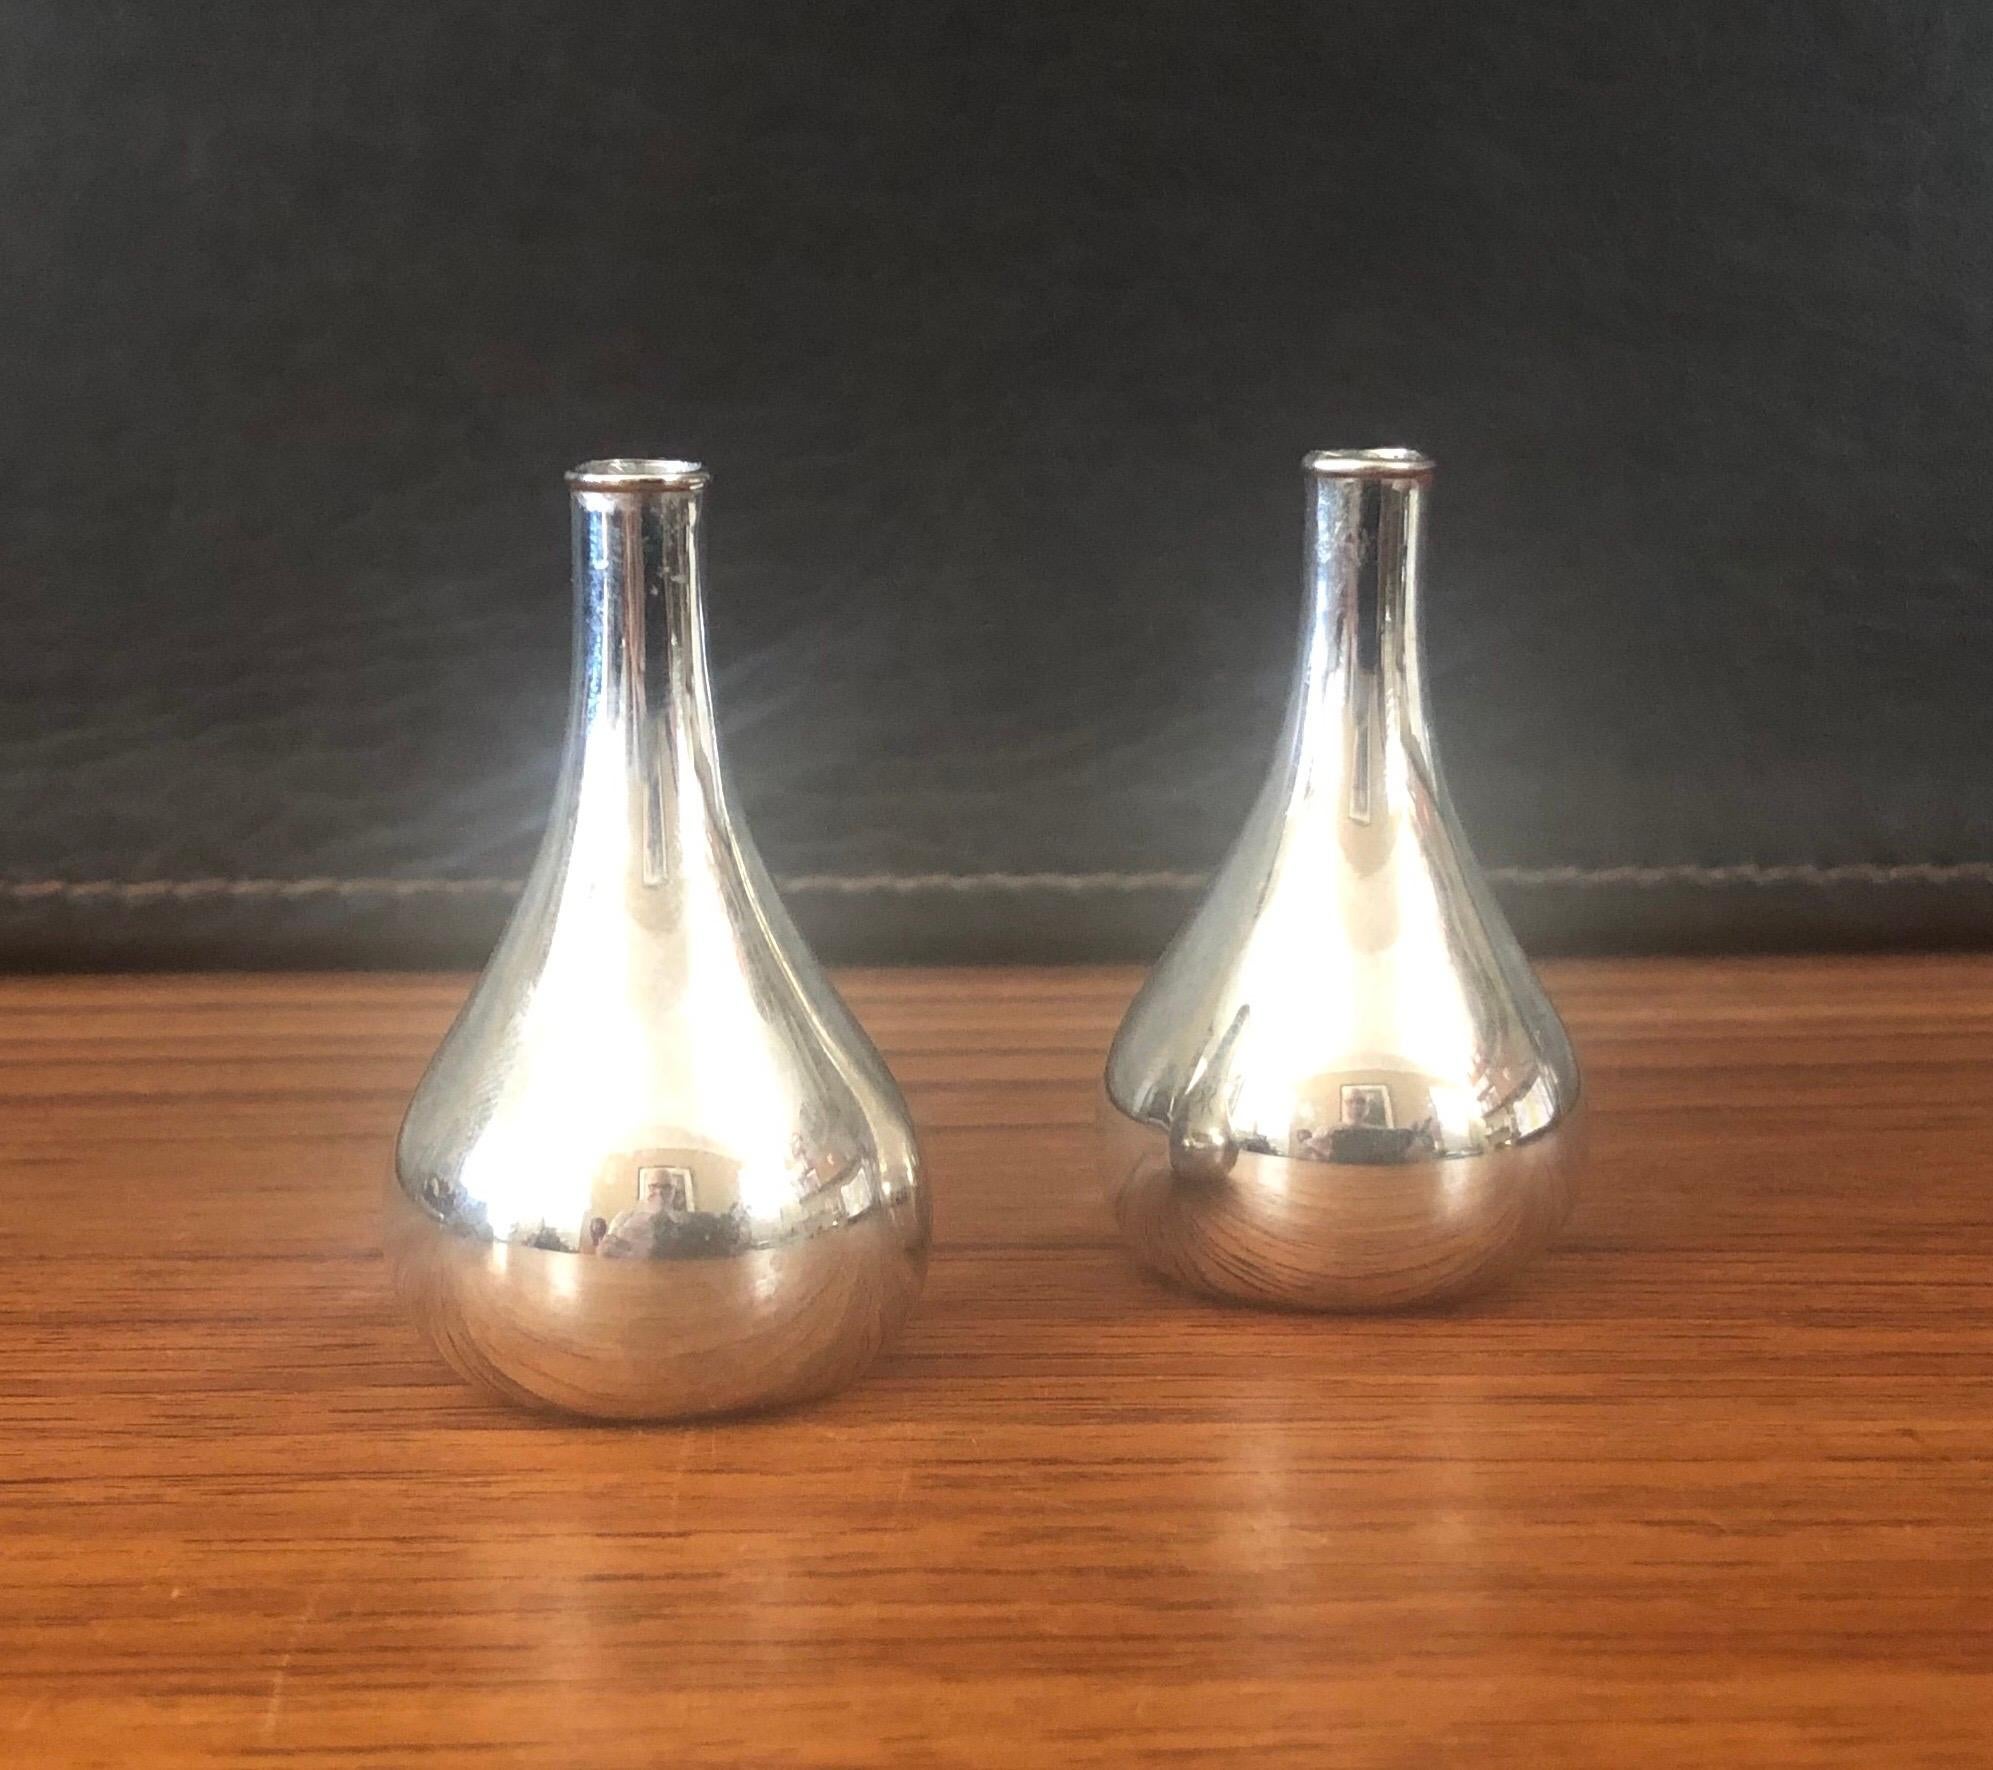 Satz von vier tropfenförmigen Kerzenhaltern von Jens Quistgaard für Dansk, ca. 1990er Jahre. Sie sind aus Silberblech über Metall gefertigt und tragen eine spitz zulaufende Kerze von 0,25 Zoll. Die Basis des Halters ist leicht geneigt, so dass Sie